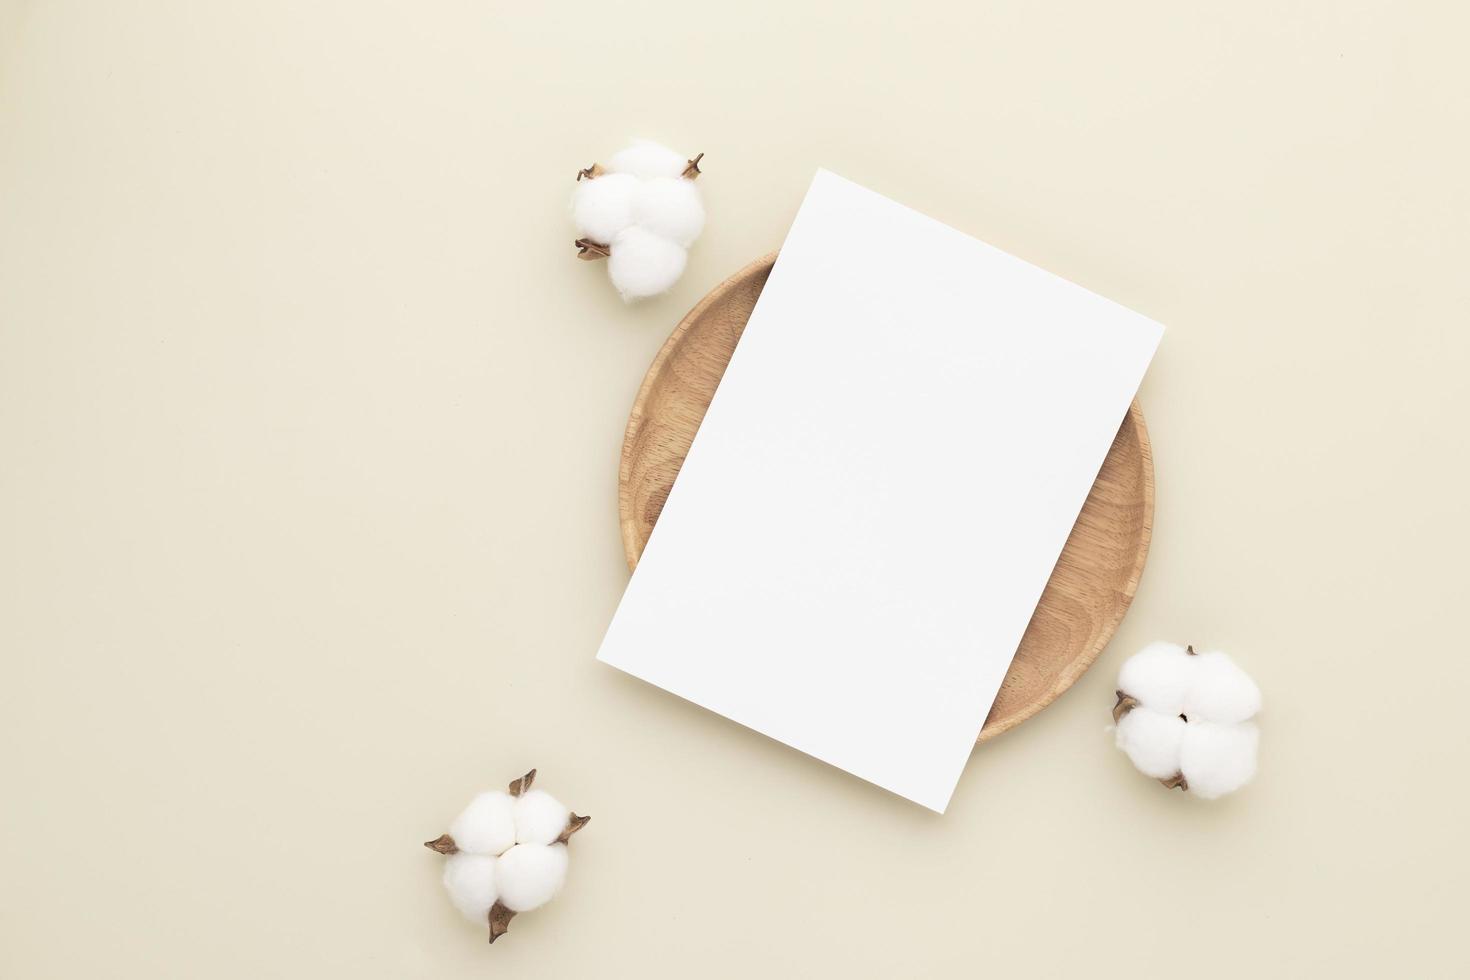 cartes en papier vierge, maquette avec une fleur de coton sur une plaque en bois, fond beige, composition minimale du lieu de travail beige, mise à plat, maquette photo